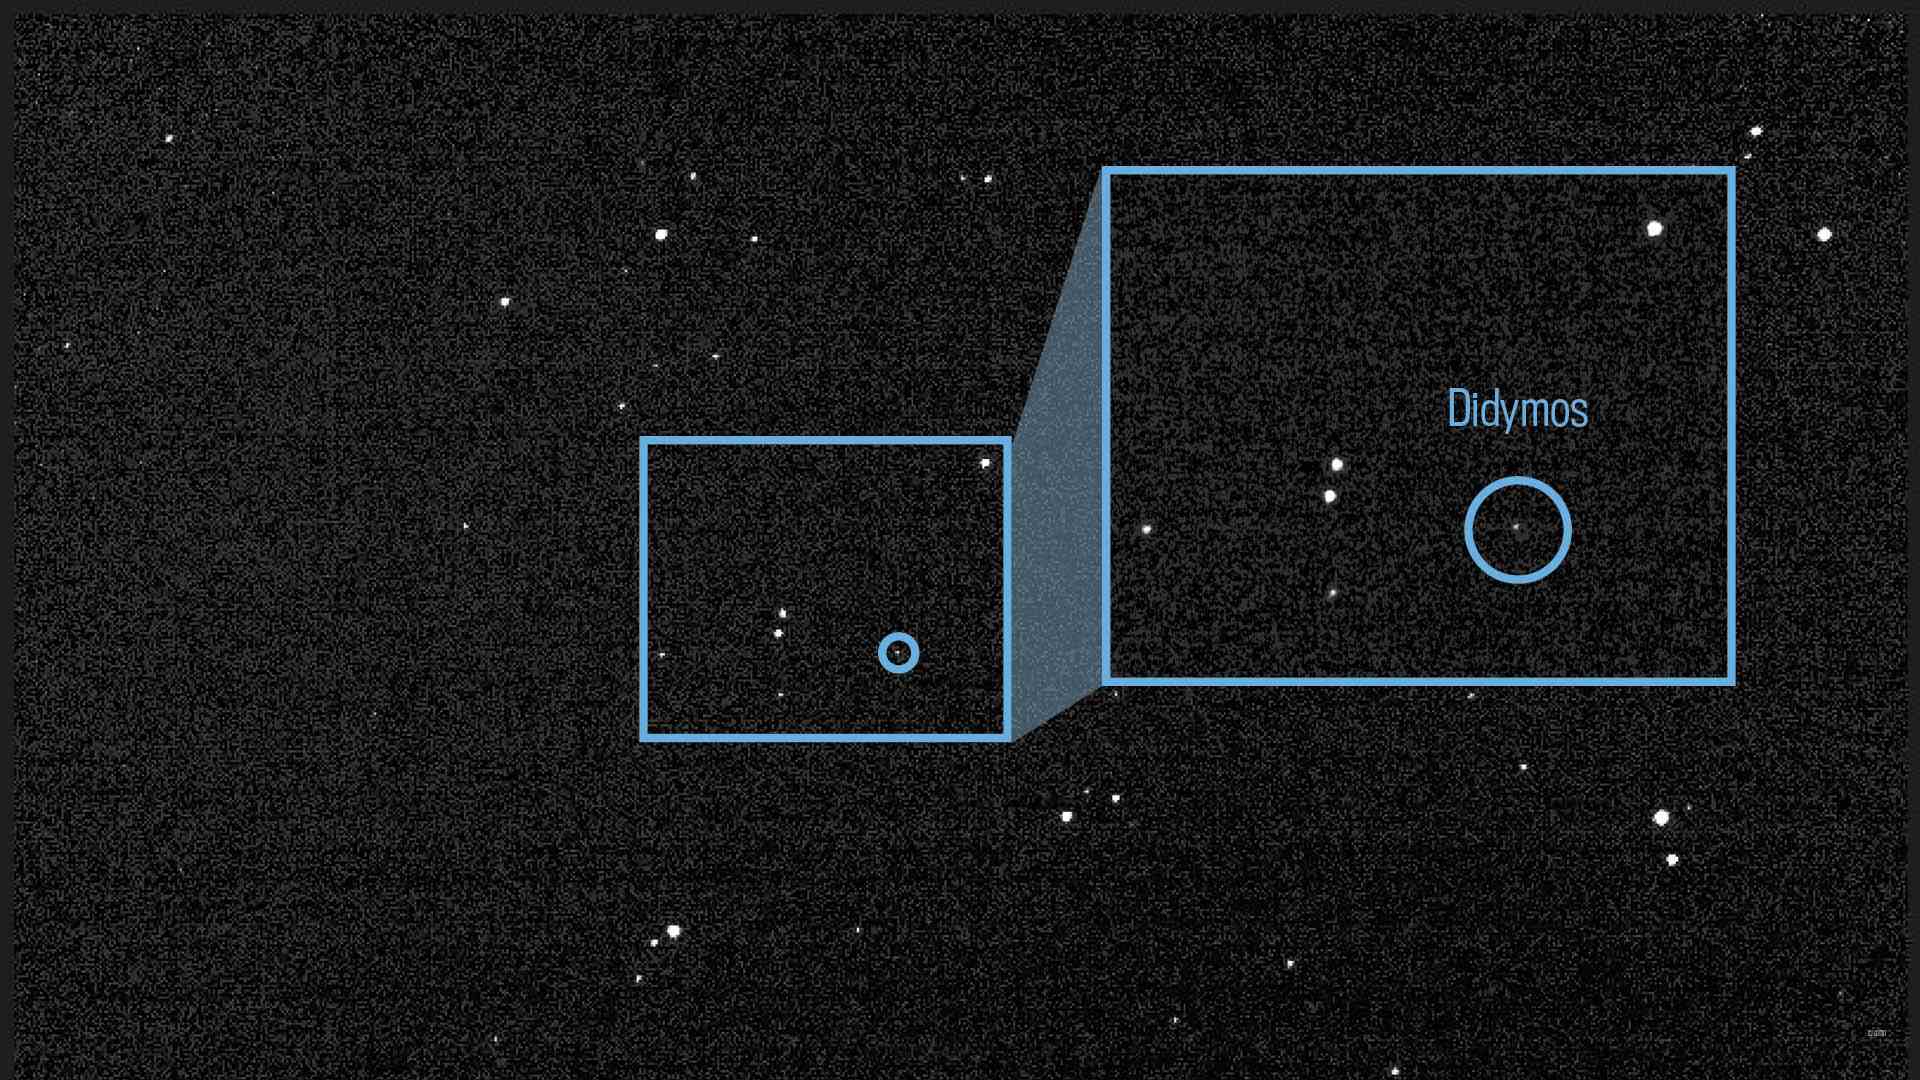 Der Asteroid Didymos und sein kleiner Mond Dimorphos sind in einem zusammengesetzten Bild zu sehen, das am 27. Juli 2022 mit dem DRACO-Instrument von DART aufgenommen wurde.